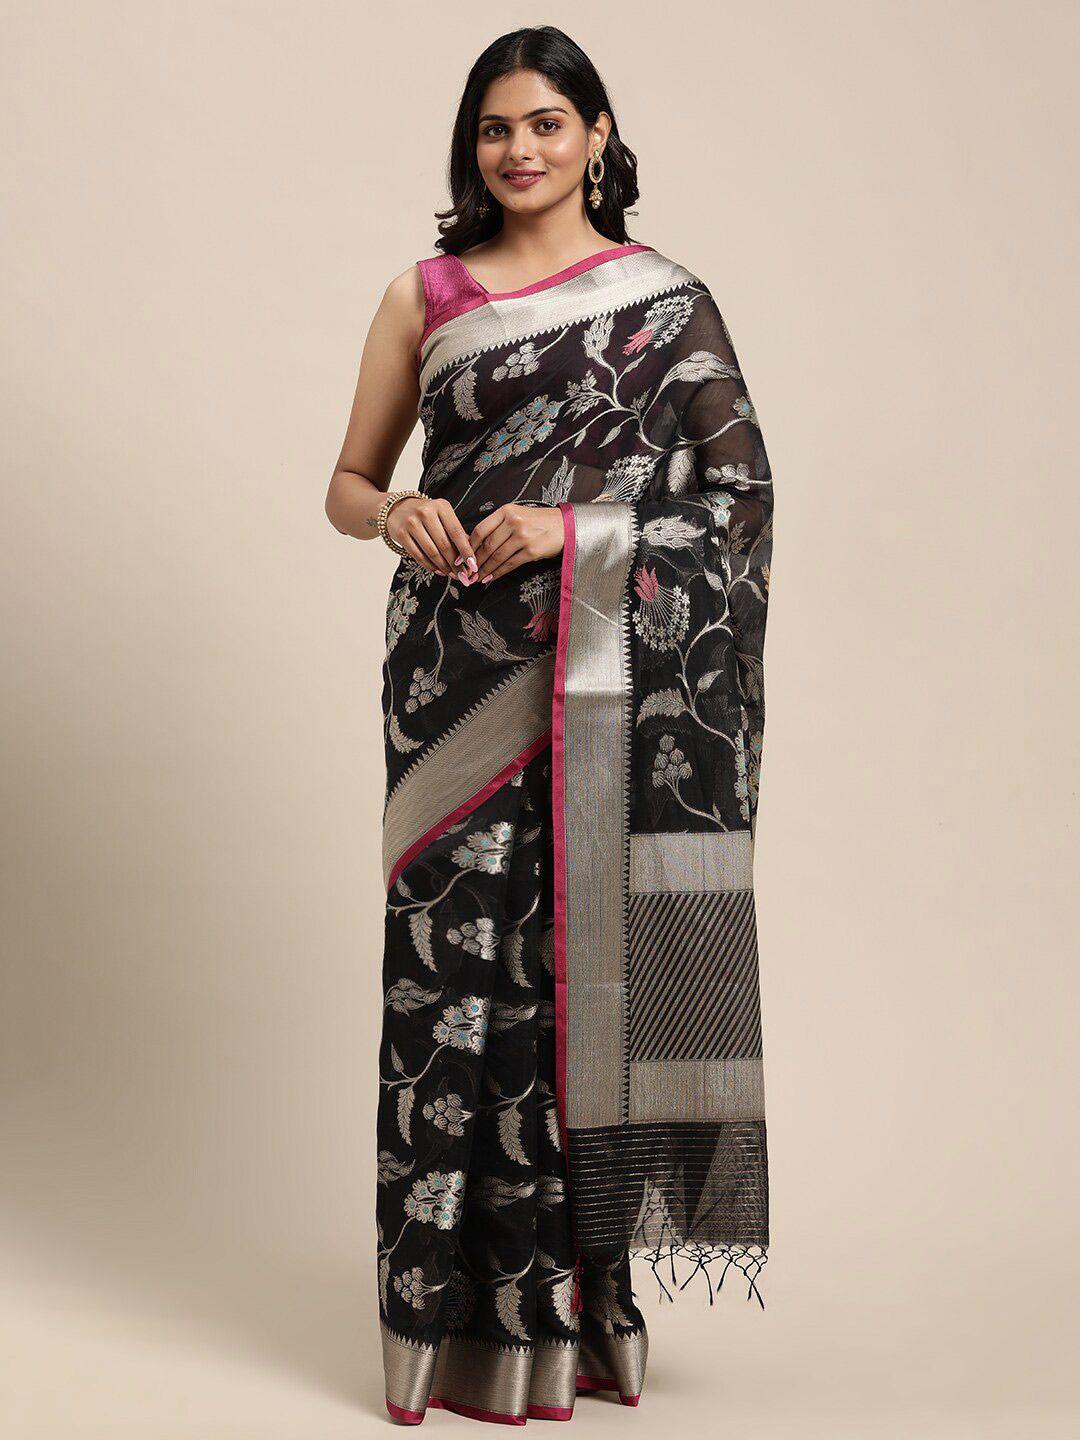 ptiepl banarasi silk works black & pink floral zari banarasi saree